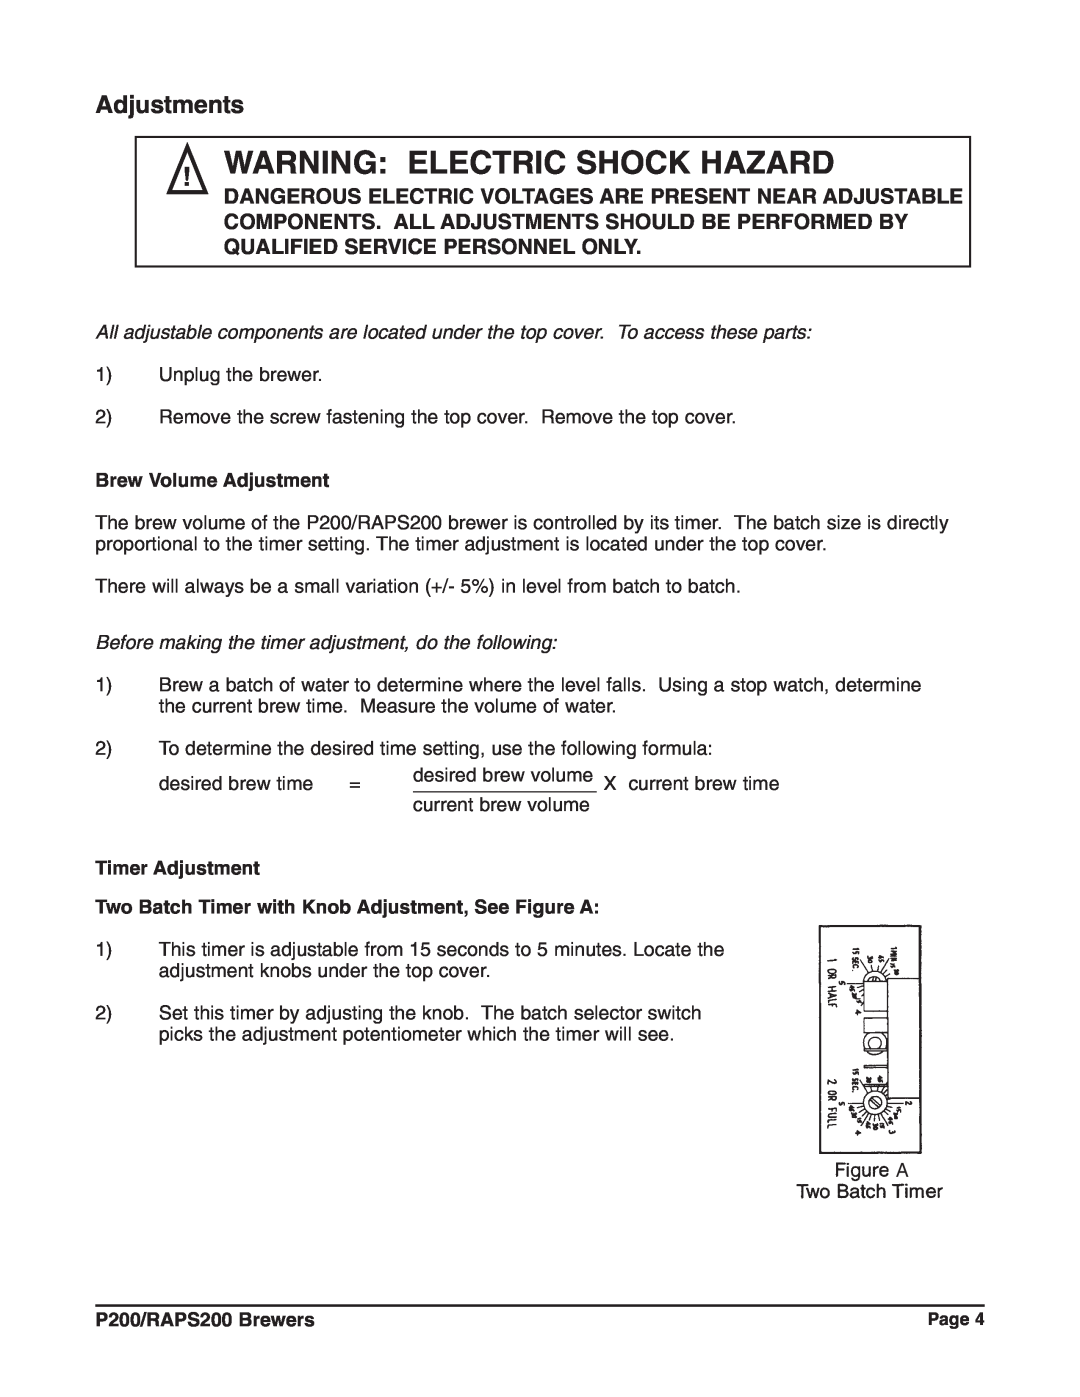 Grindmaster RAPS200E, P200E Warning Electric Shock Hazard, Adjustments, Brew Volume Adjustment, Timer Adjustment 